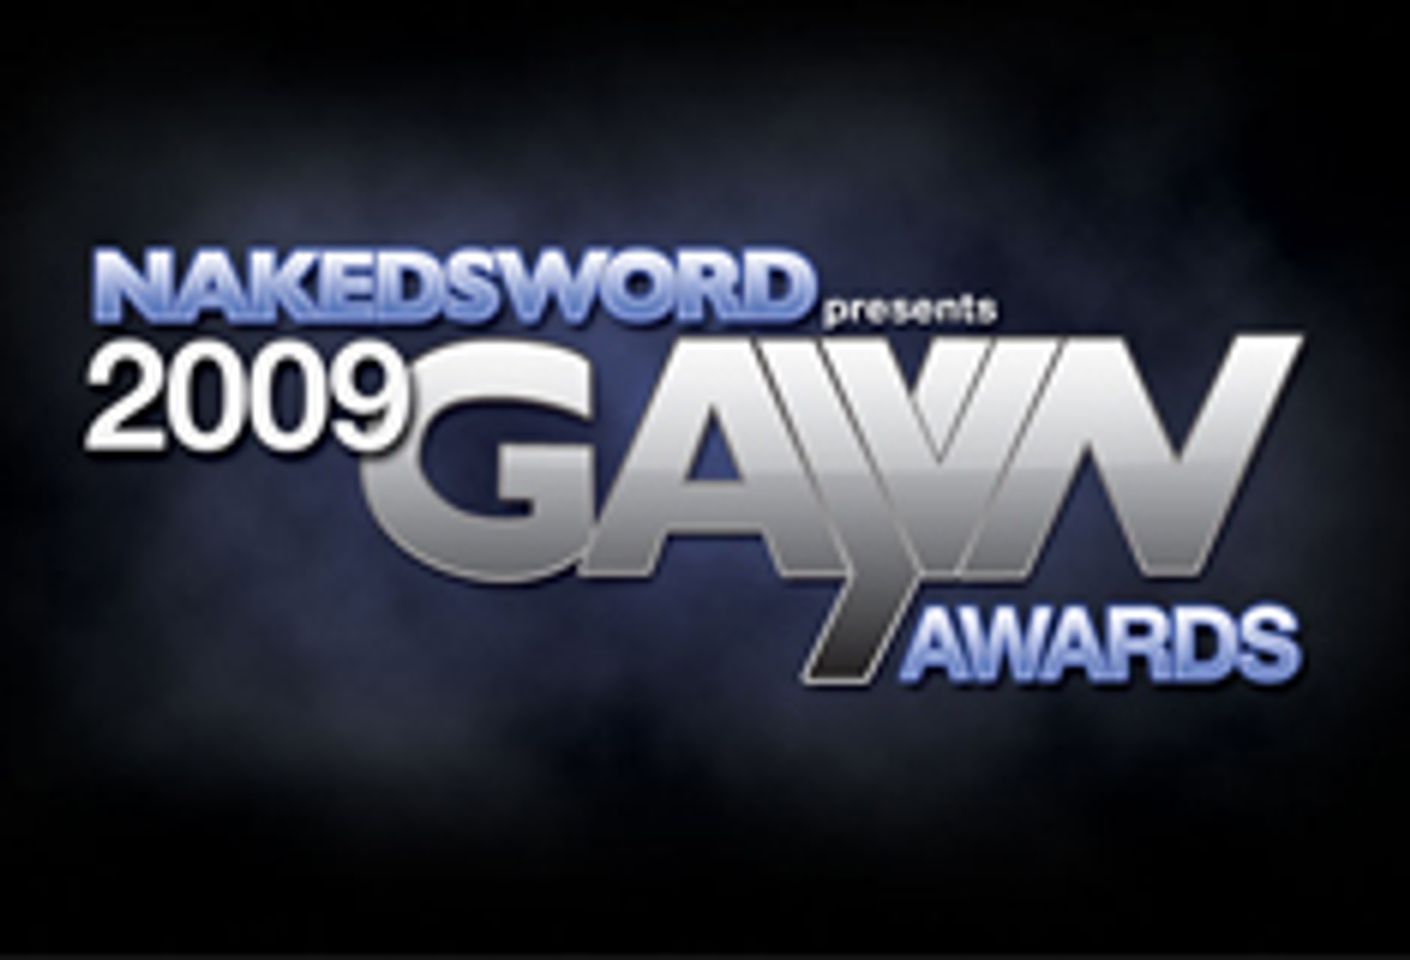 The 2009 GAYVN Awards Pre-nom Site is Live